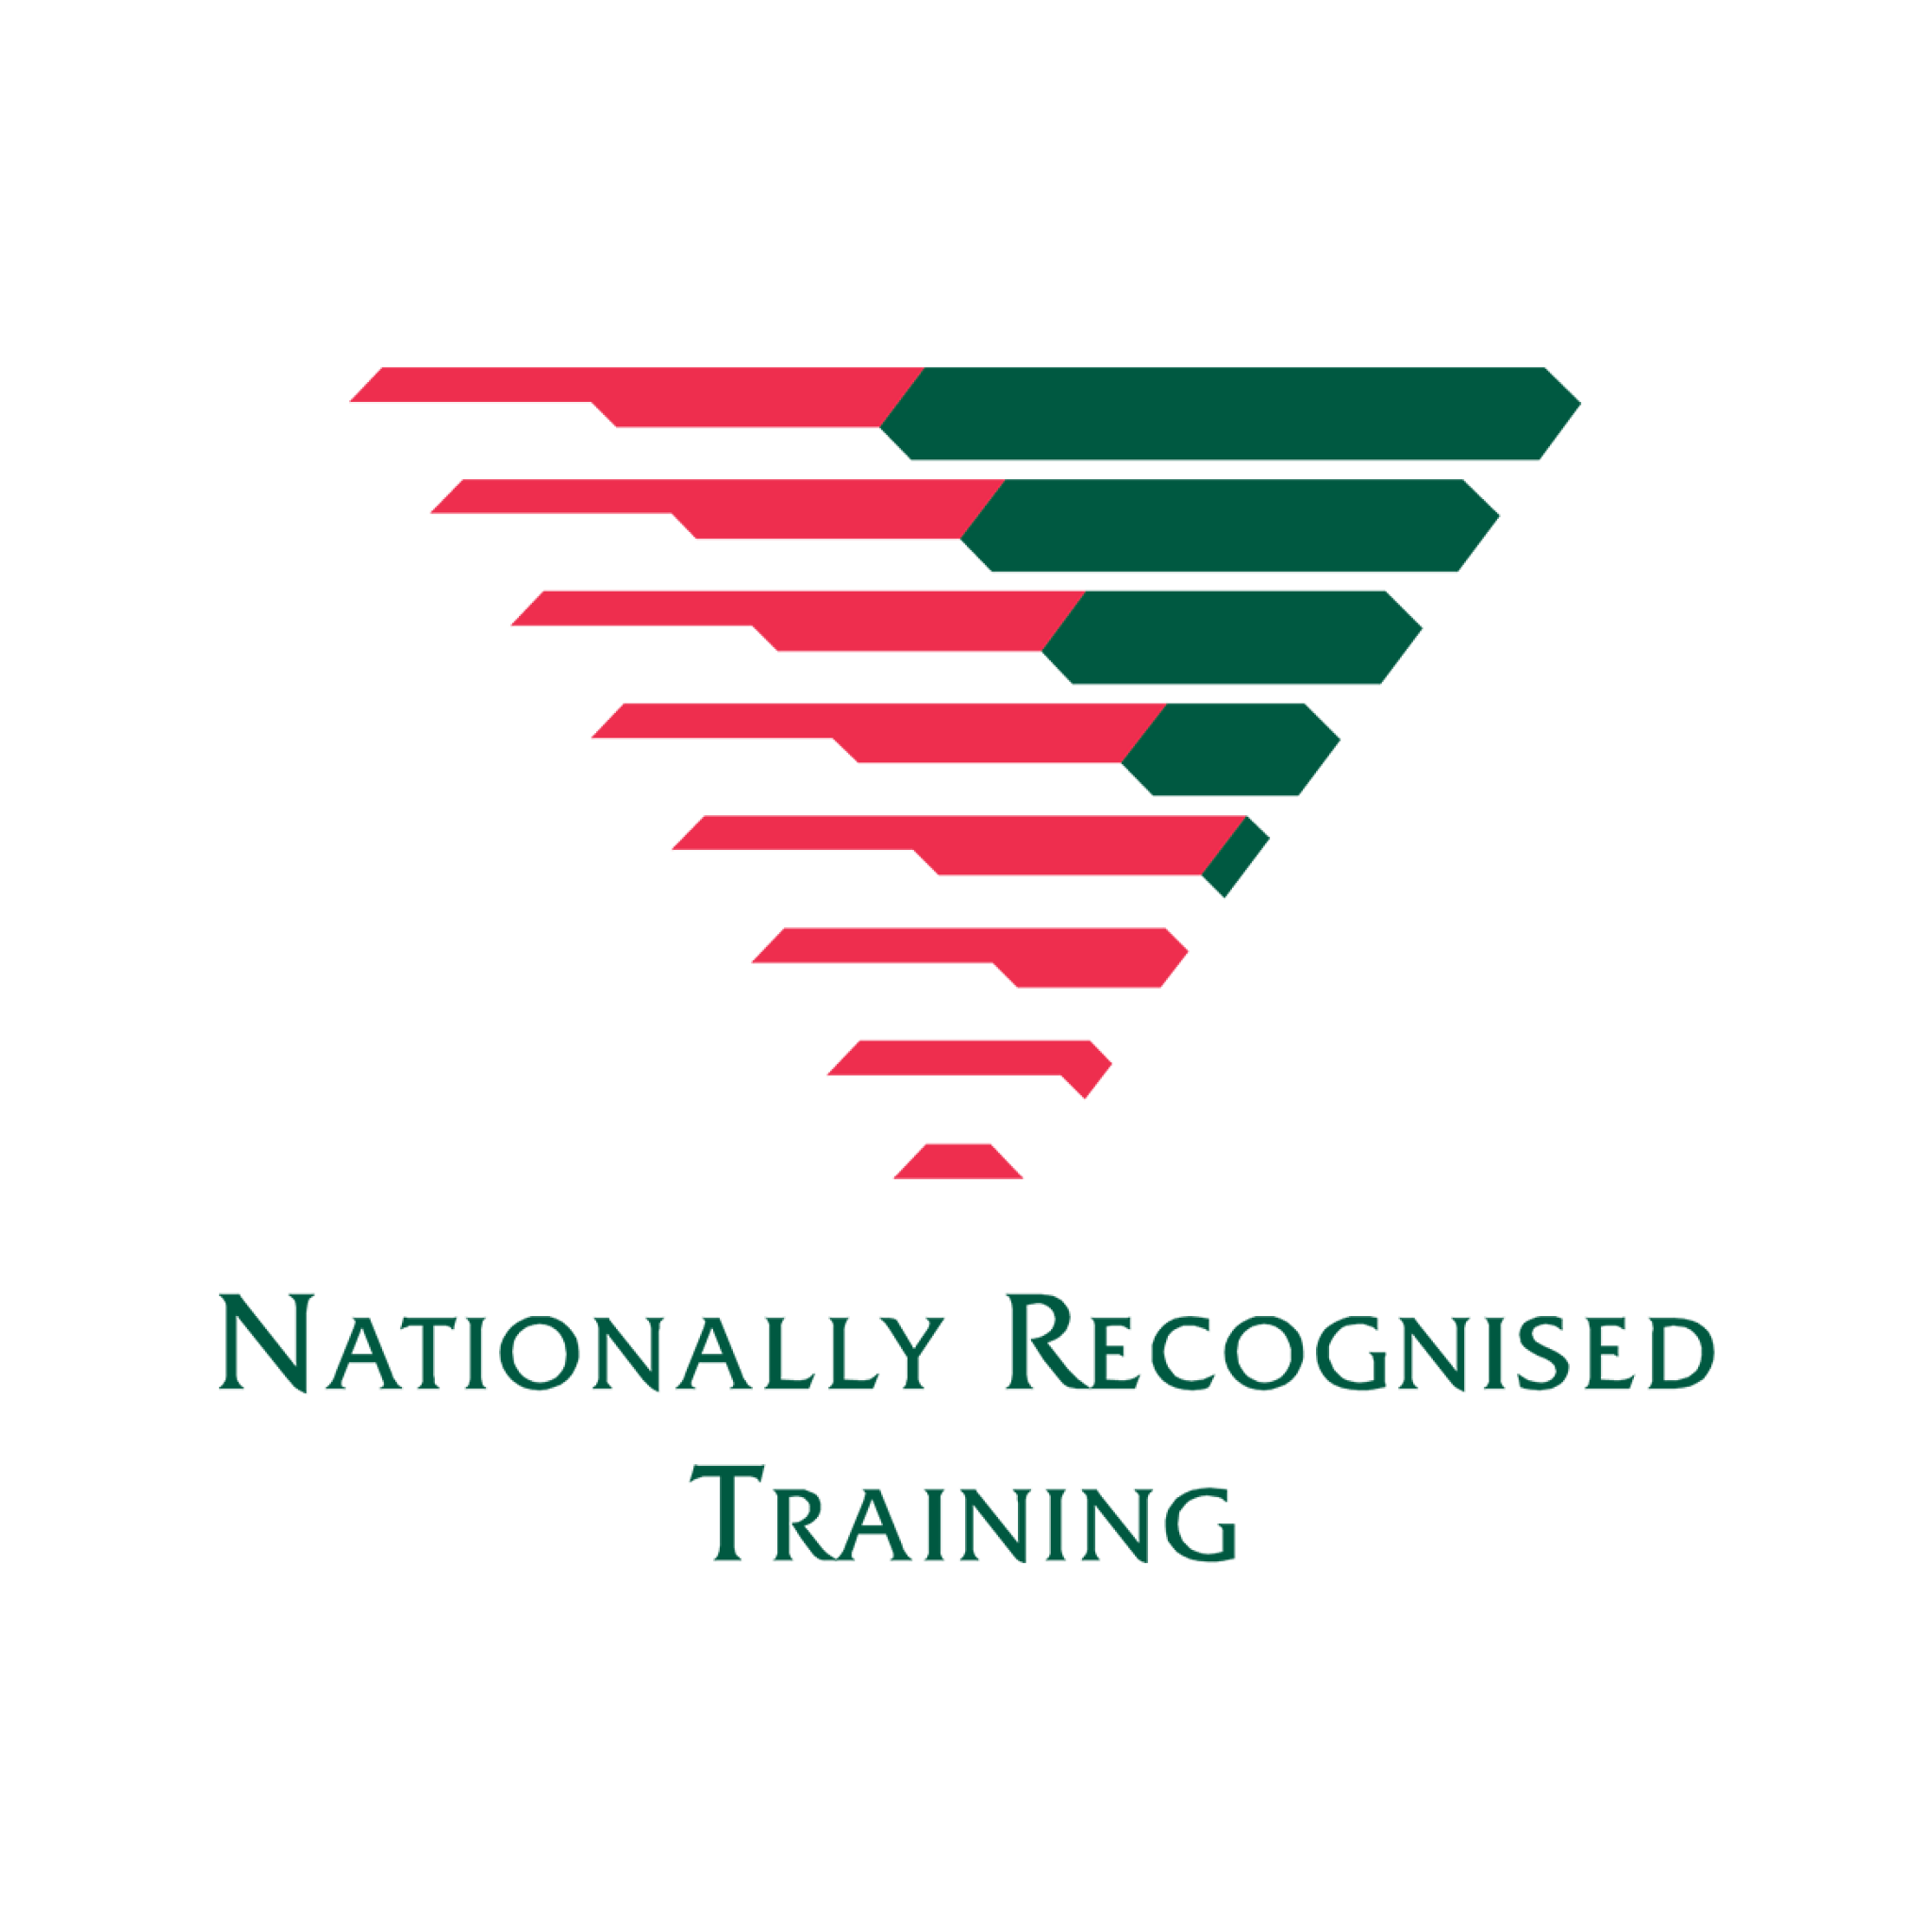 NRT Logo